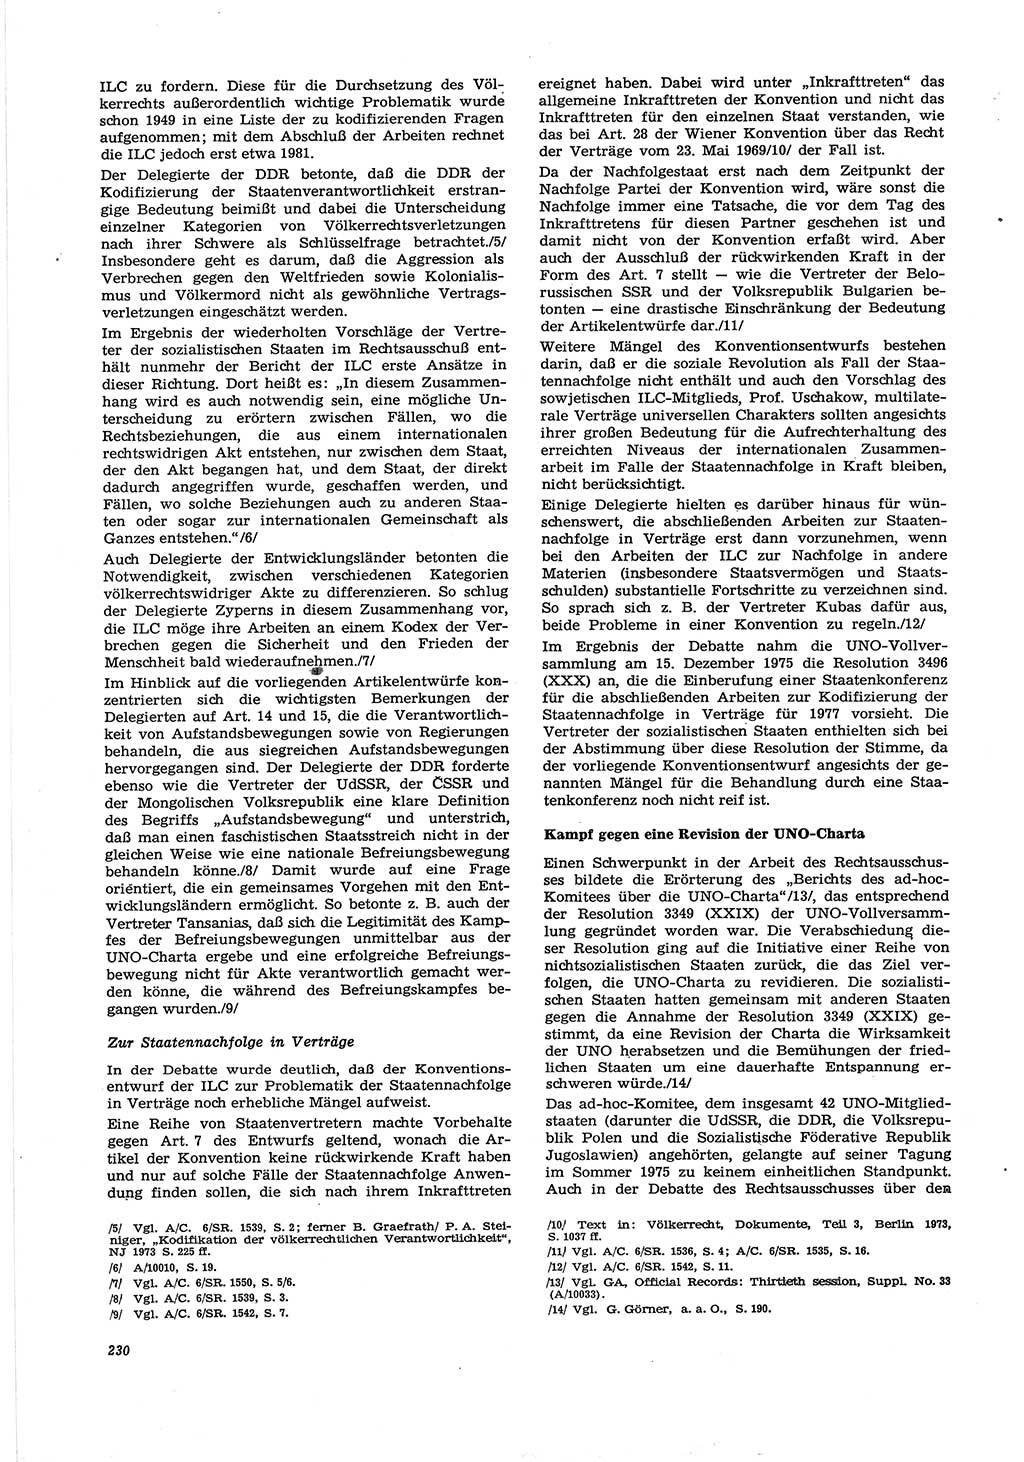 Neue Justiz (NJ), Zeitschrift für Recht und Rechtswissenschaft [Deutsche Demokratische Republik (DDR)], 30. Jahrgang 1976, Seite 230 (NJ DDR 1976, S. 230)